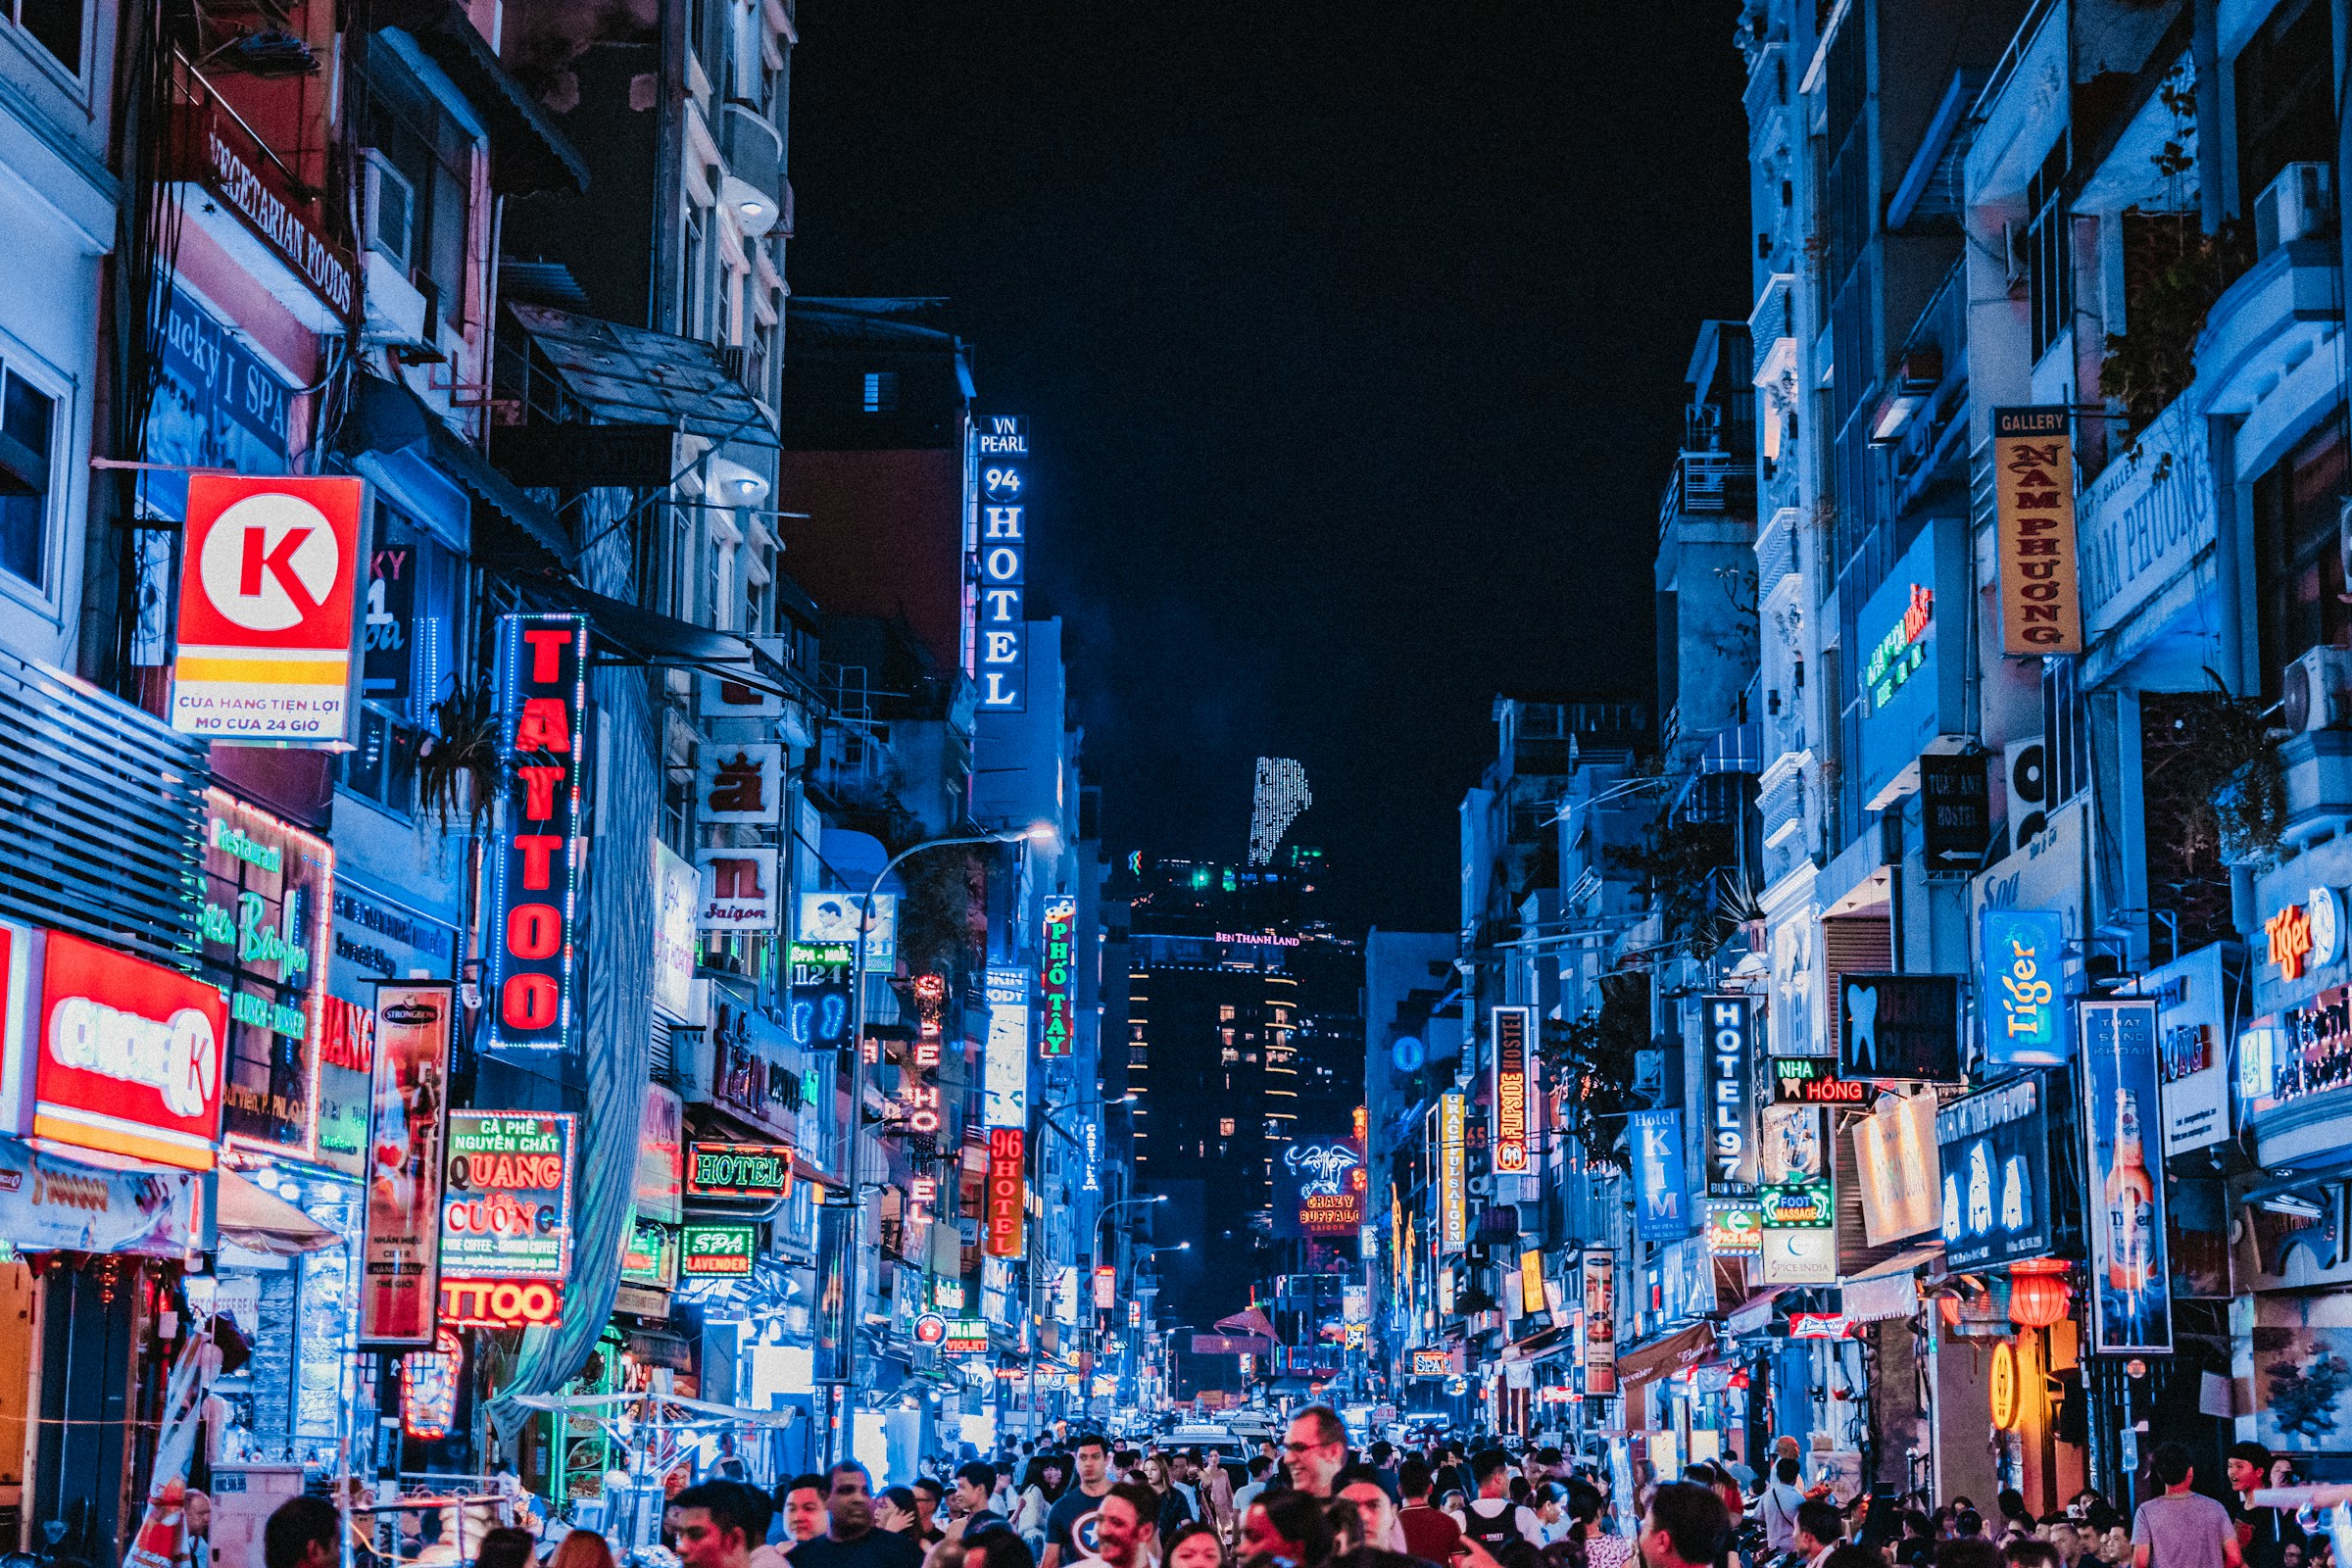 Livlig stadsgata på kvällen i Ho Chi Minh City med neonljus och skyltar, folksamling promenerar i storstadsatmosfär.